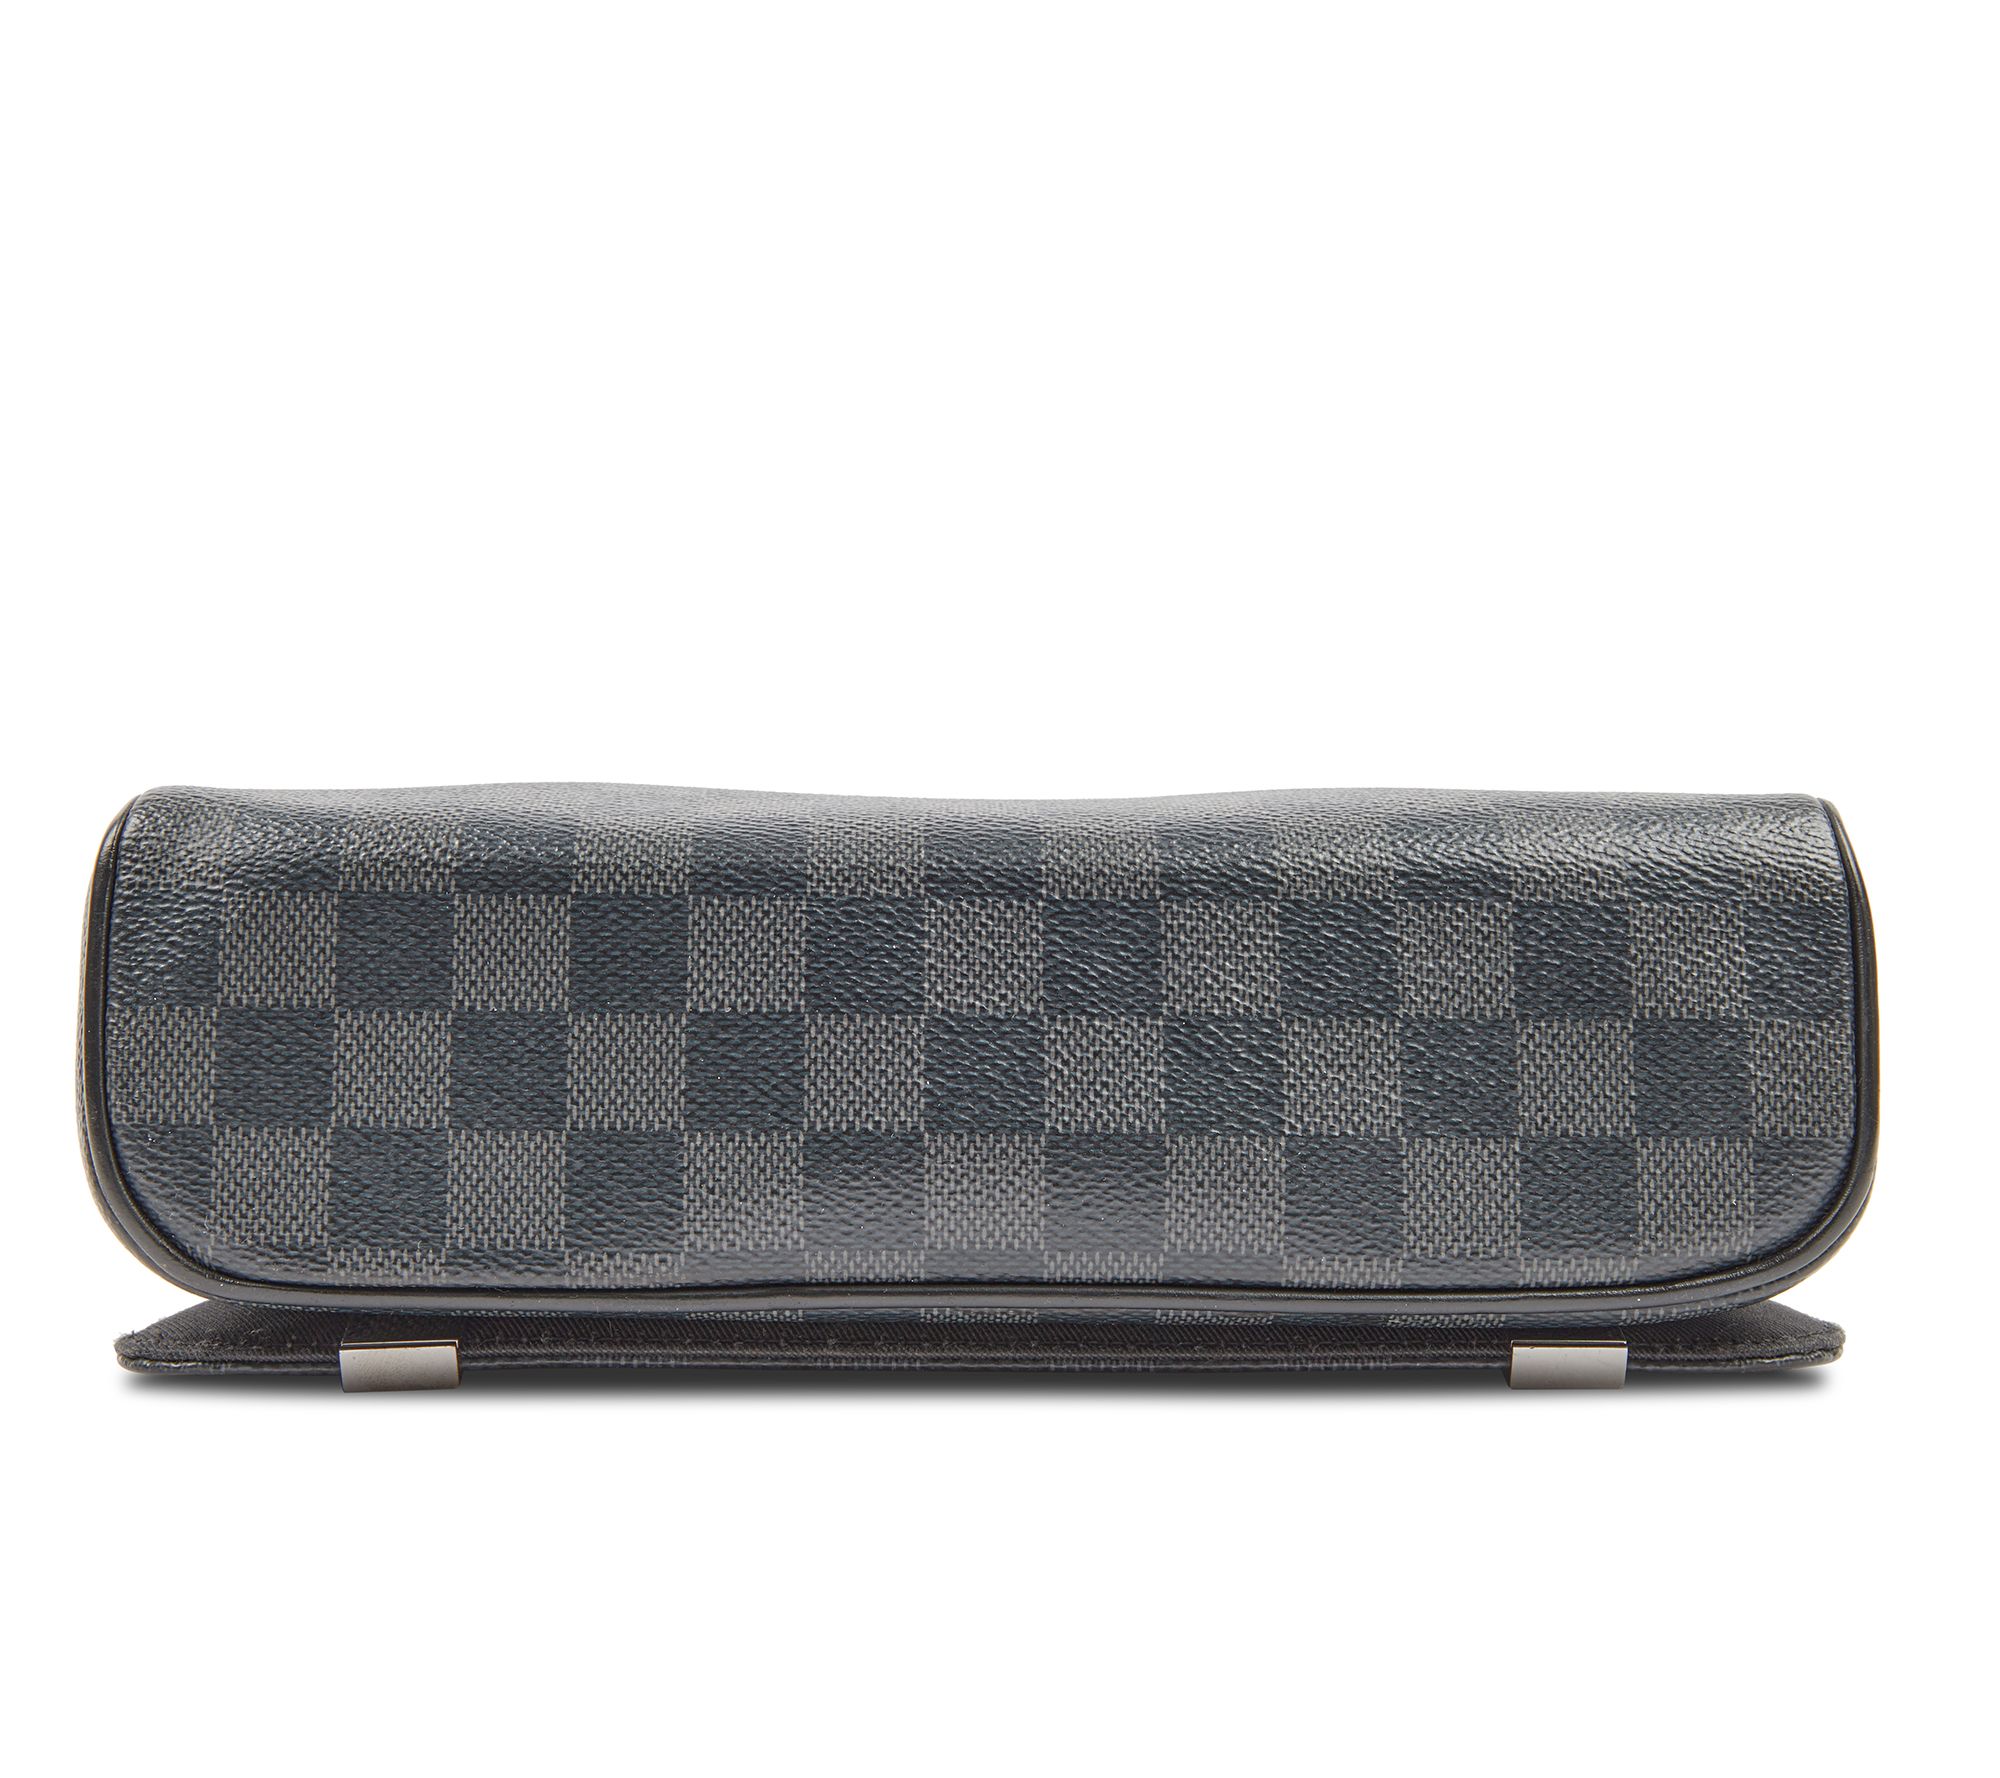 Louis Vuitton Black Leather Adjustable Shoulder Bag Strap Louis Vuitton |  The Luxury Closet